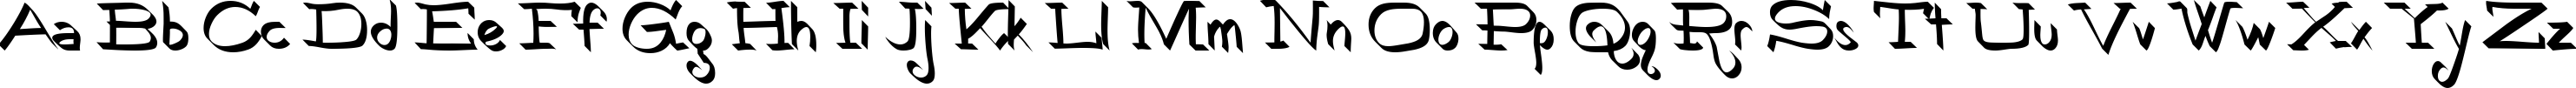 Пример написания английского алфавита шрифтом RoboKoz